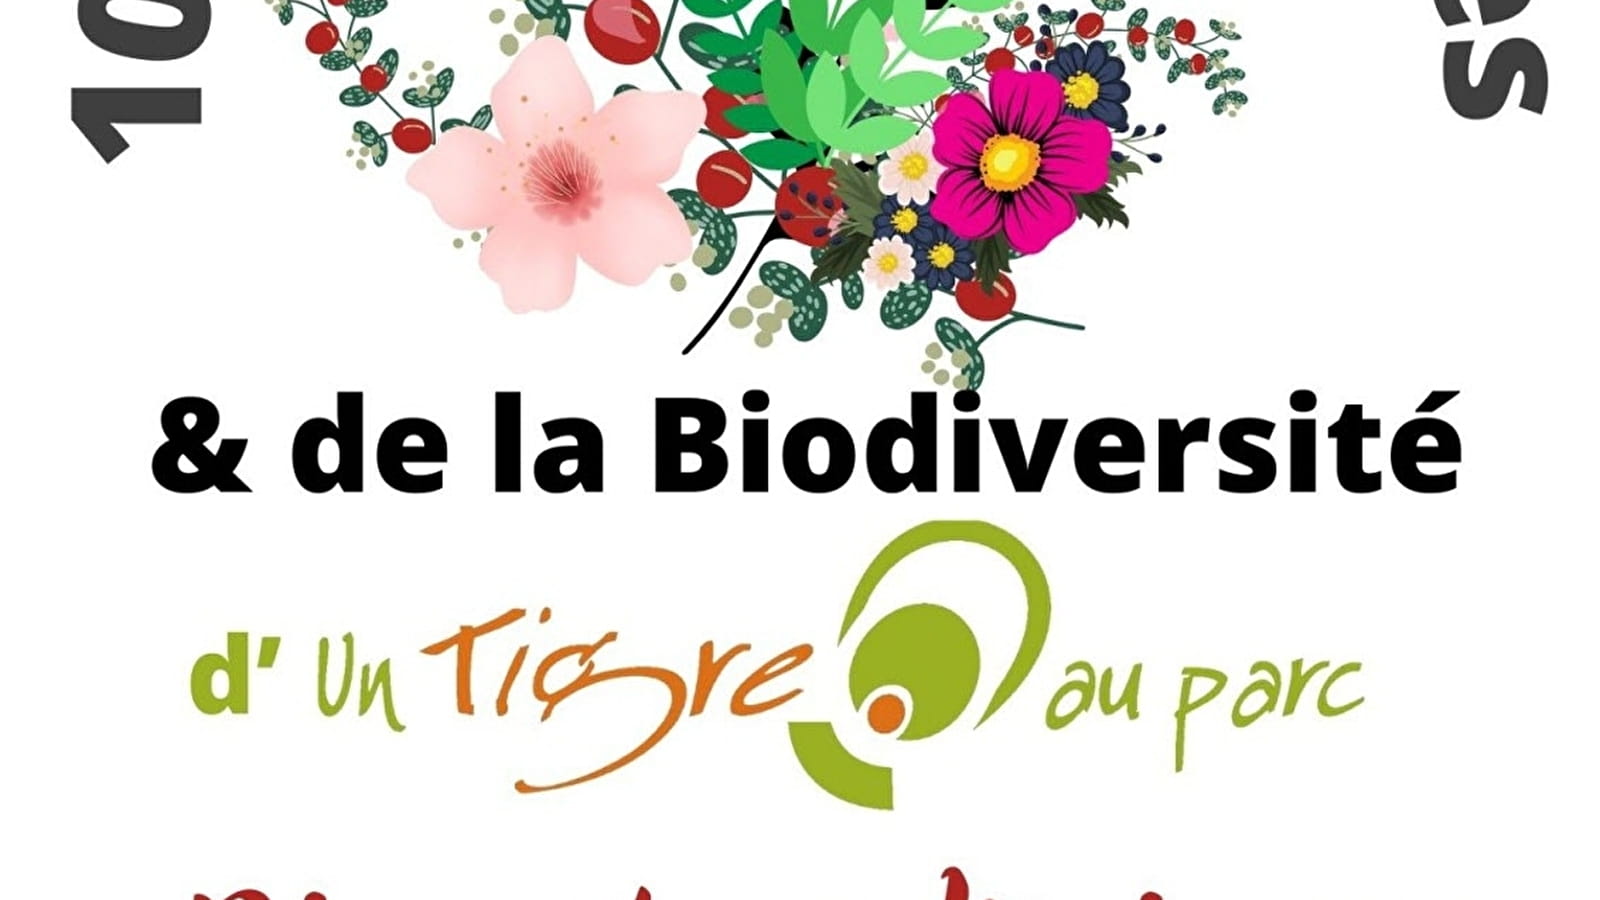 10. Markt für Pflanzen und Biodiversität in Dijon